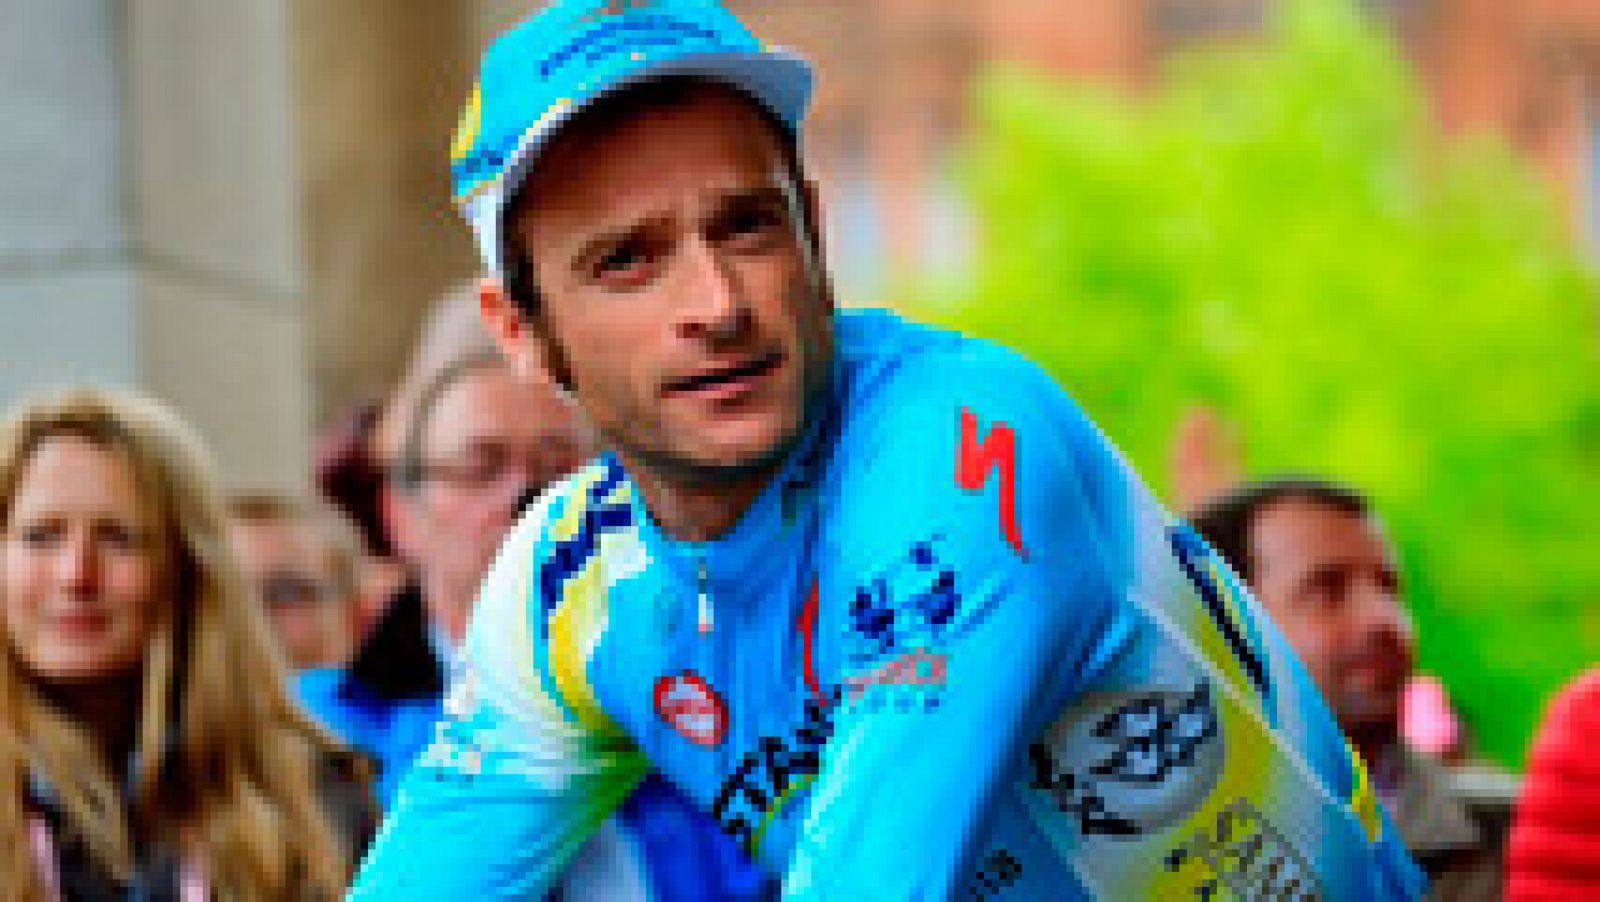 Los compañeros de profesión de Michele Scarponi han mandado mensajes de recuerdo al ciclista italiano fallecido este sábado en un accidente de tráfico.